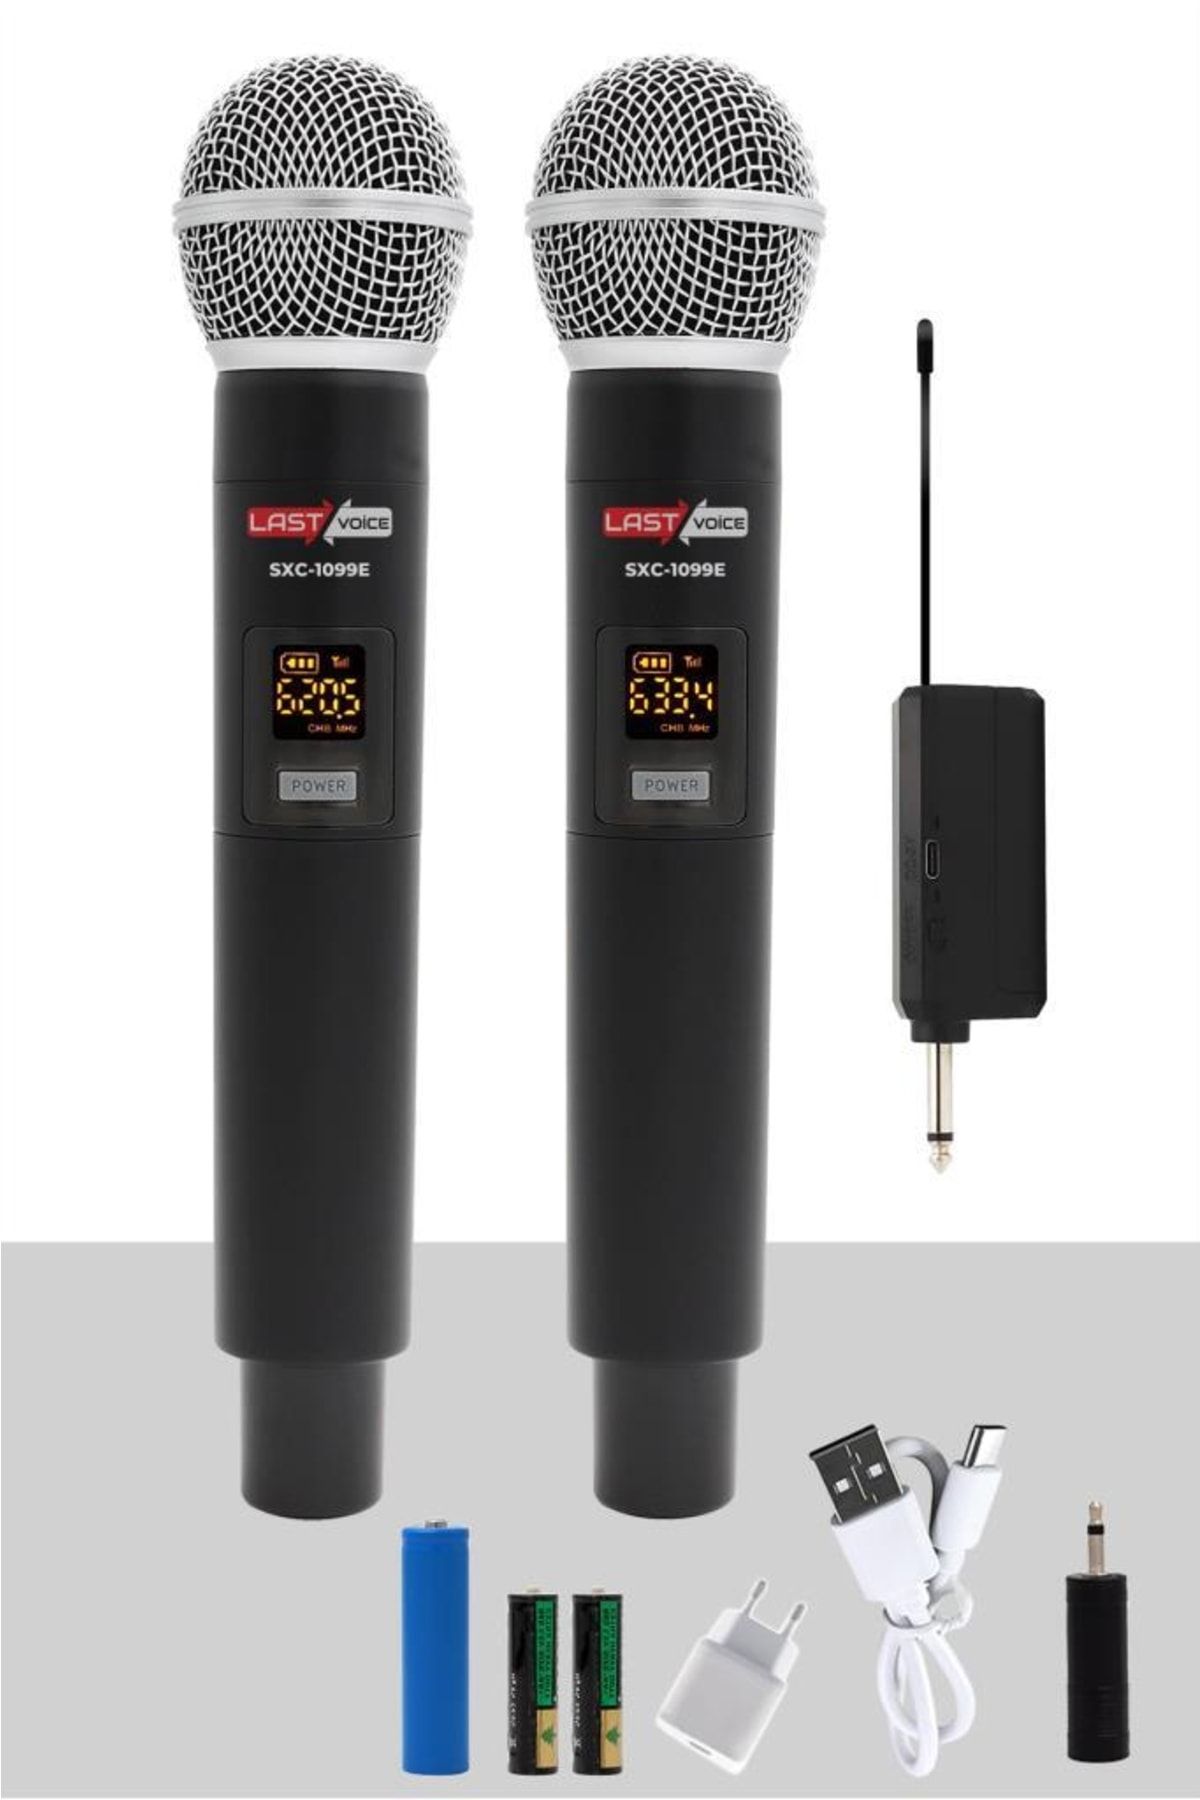 Lastvoice Sxc-1099e Şarjlı Çiftli El Telsiz Kablosuz Mikrofon Uhf